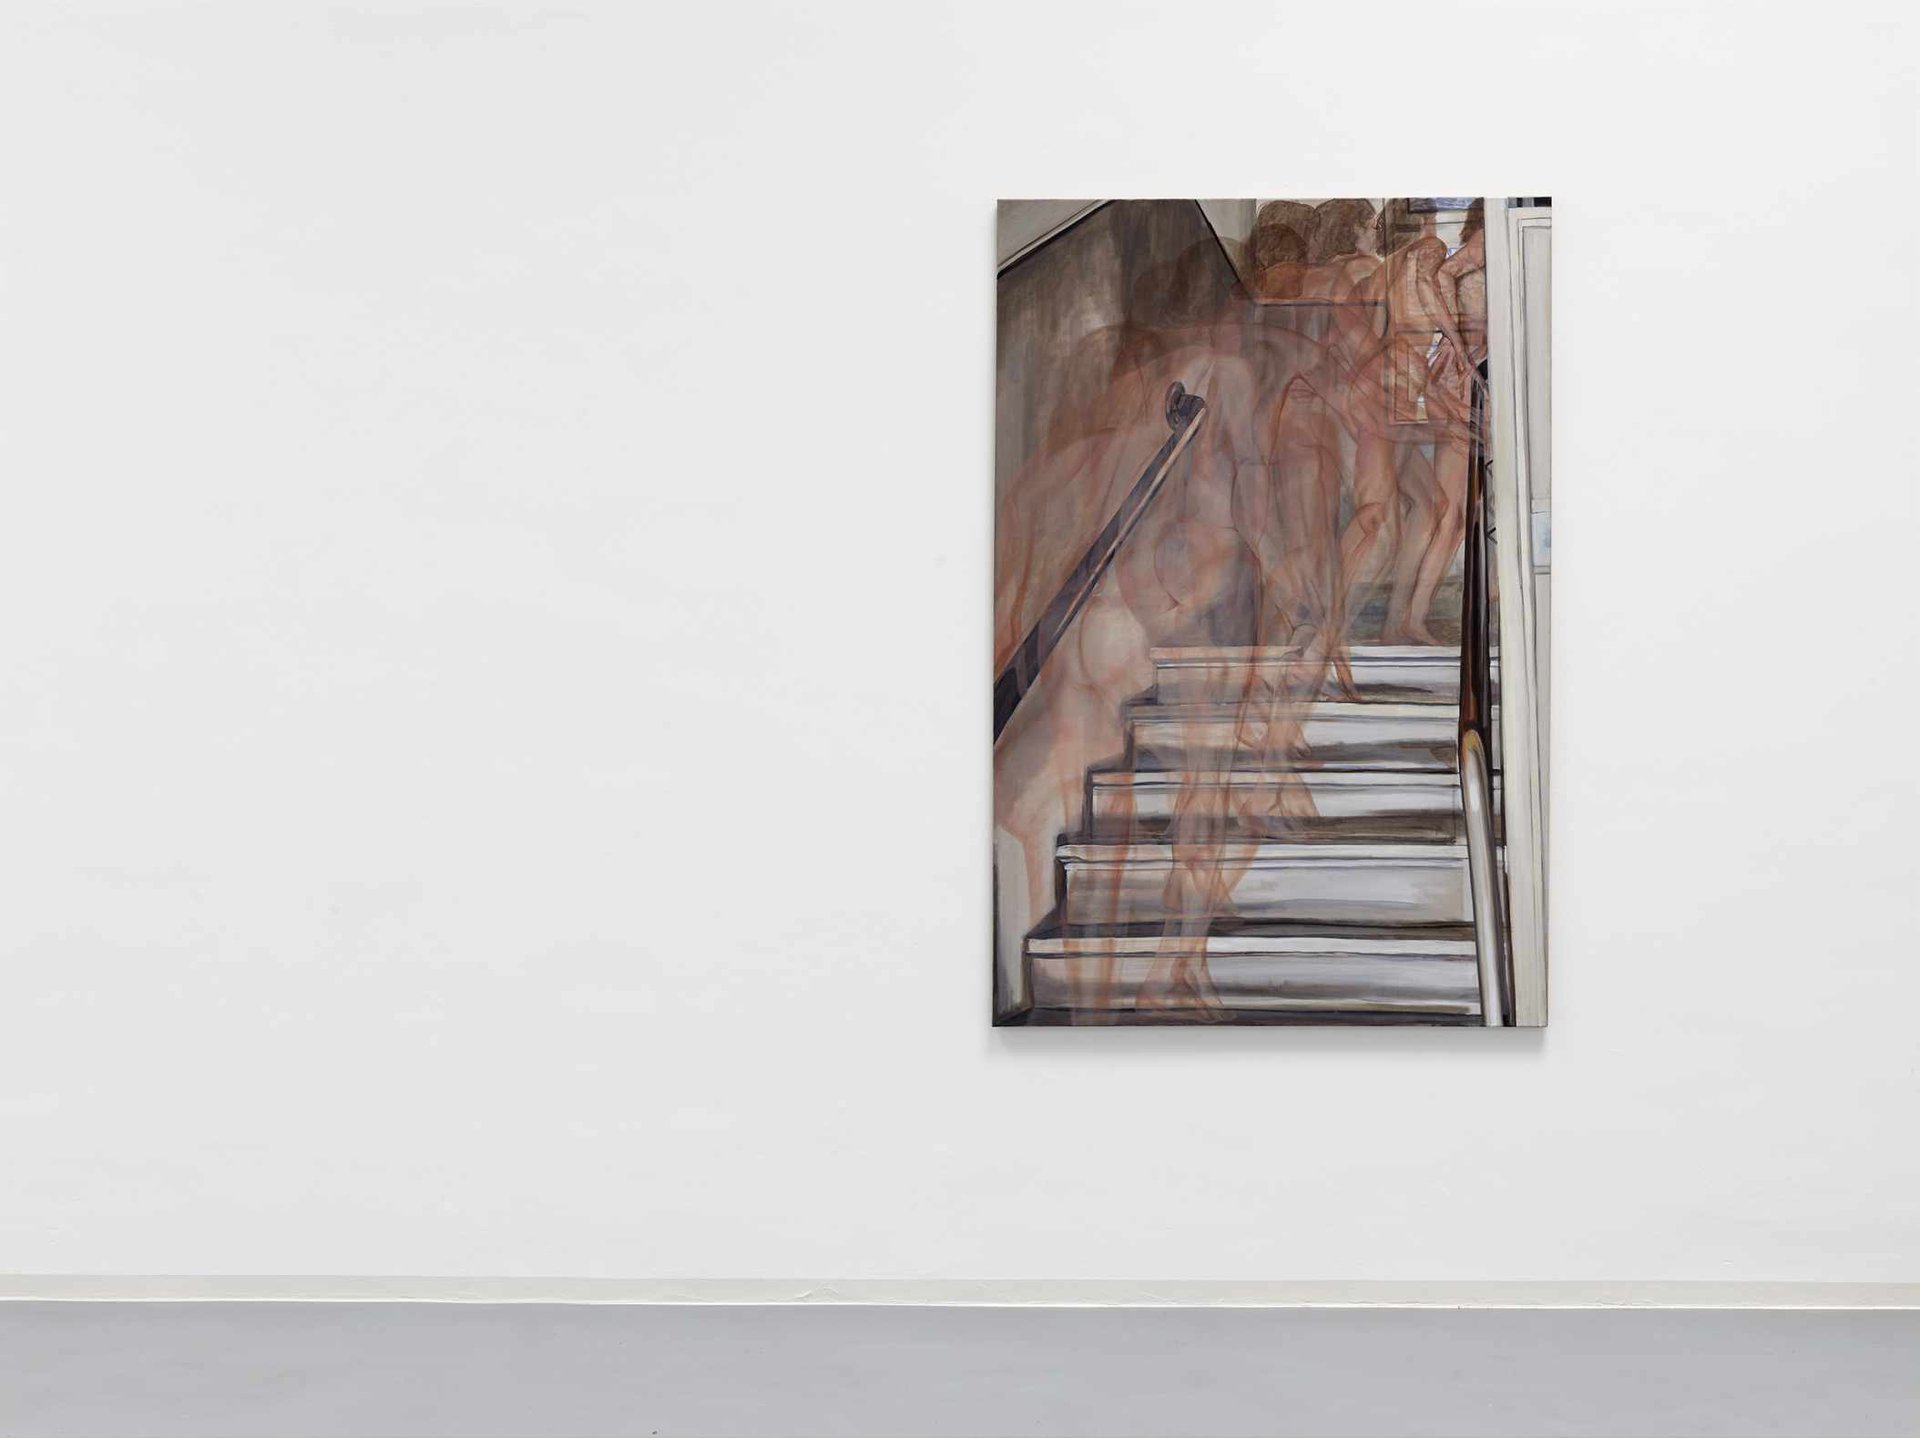 Jana Euler, Nude climbing up the stairs, Installationsansicht, 2014, Bonner Kunstverein, Courtesy die Künstlerin. Photo: Simon Vogel